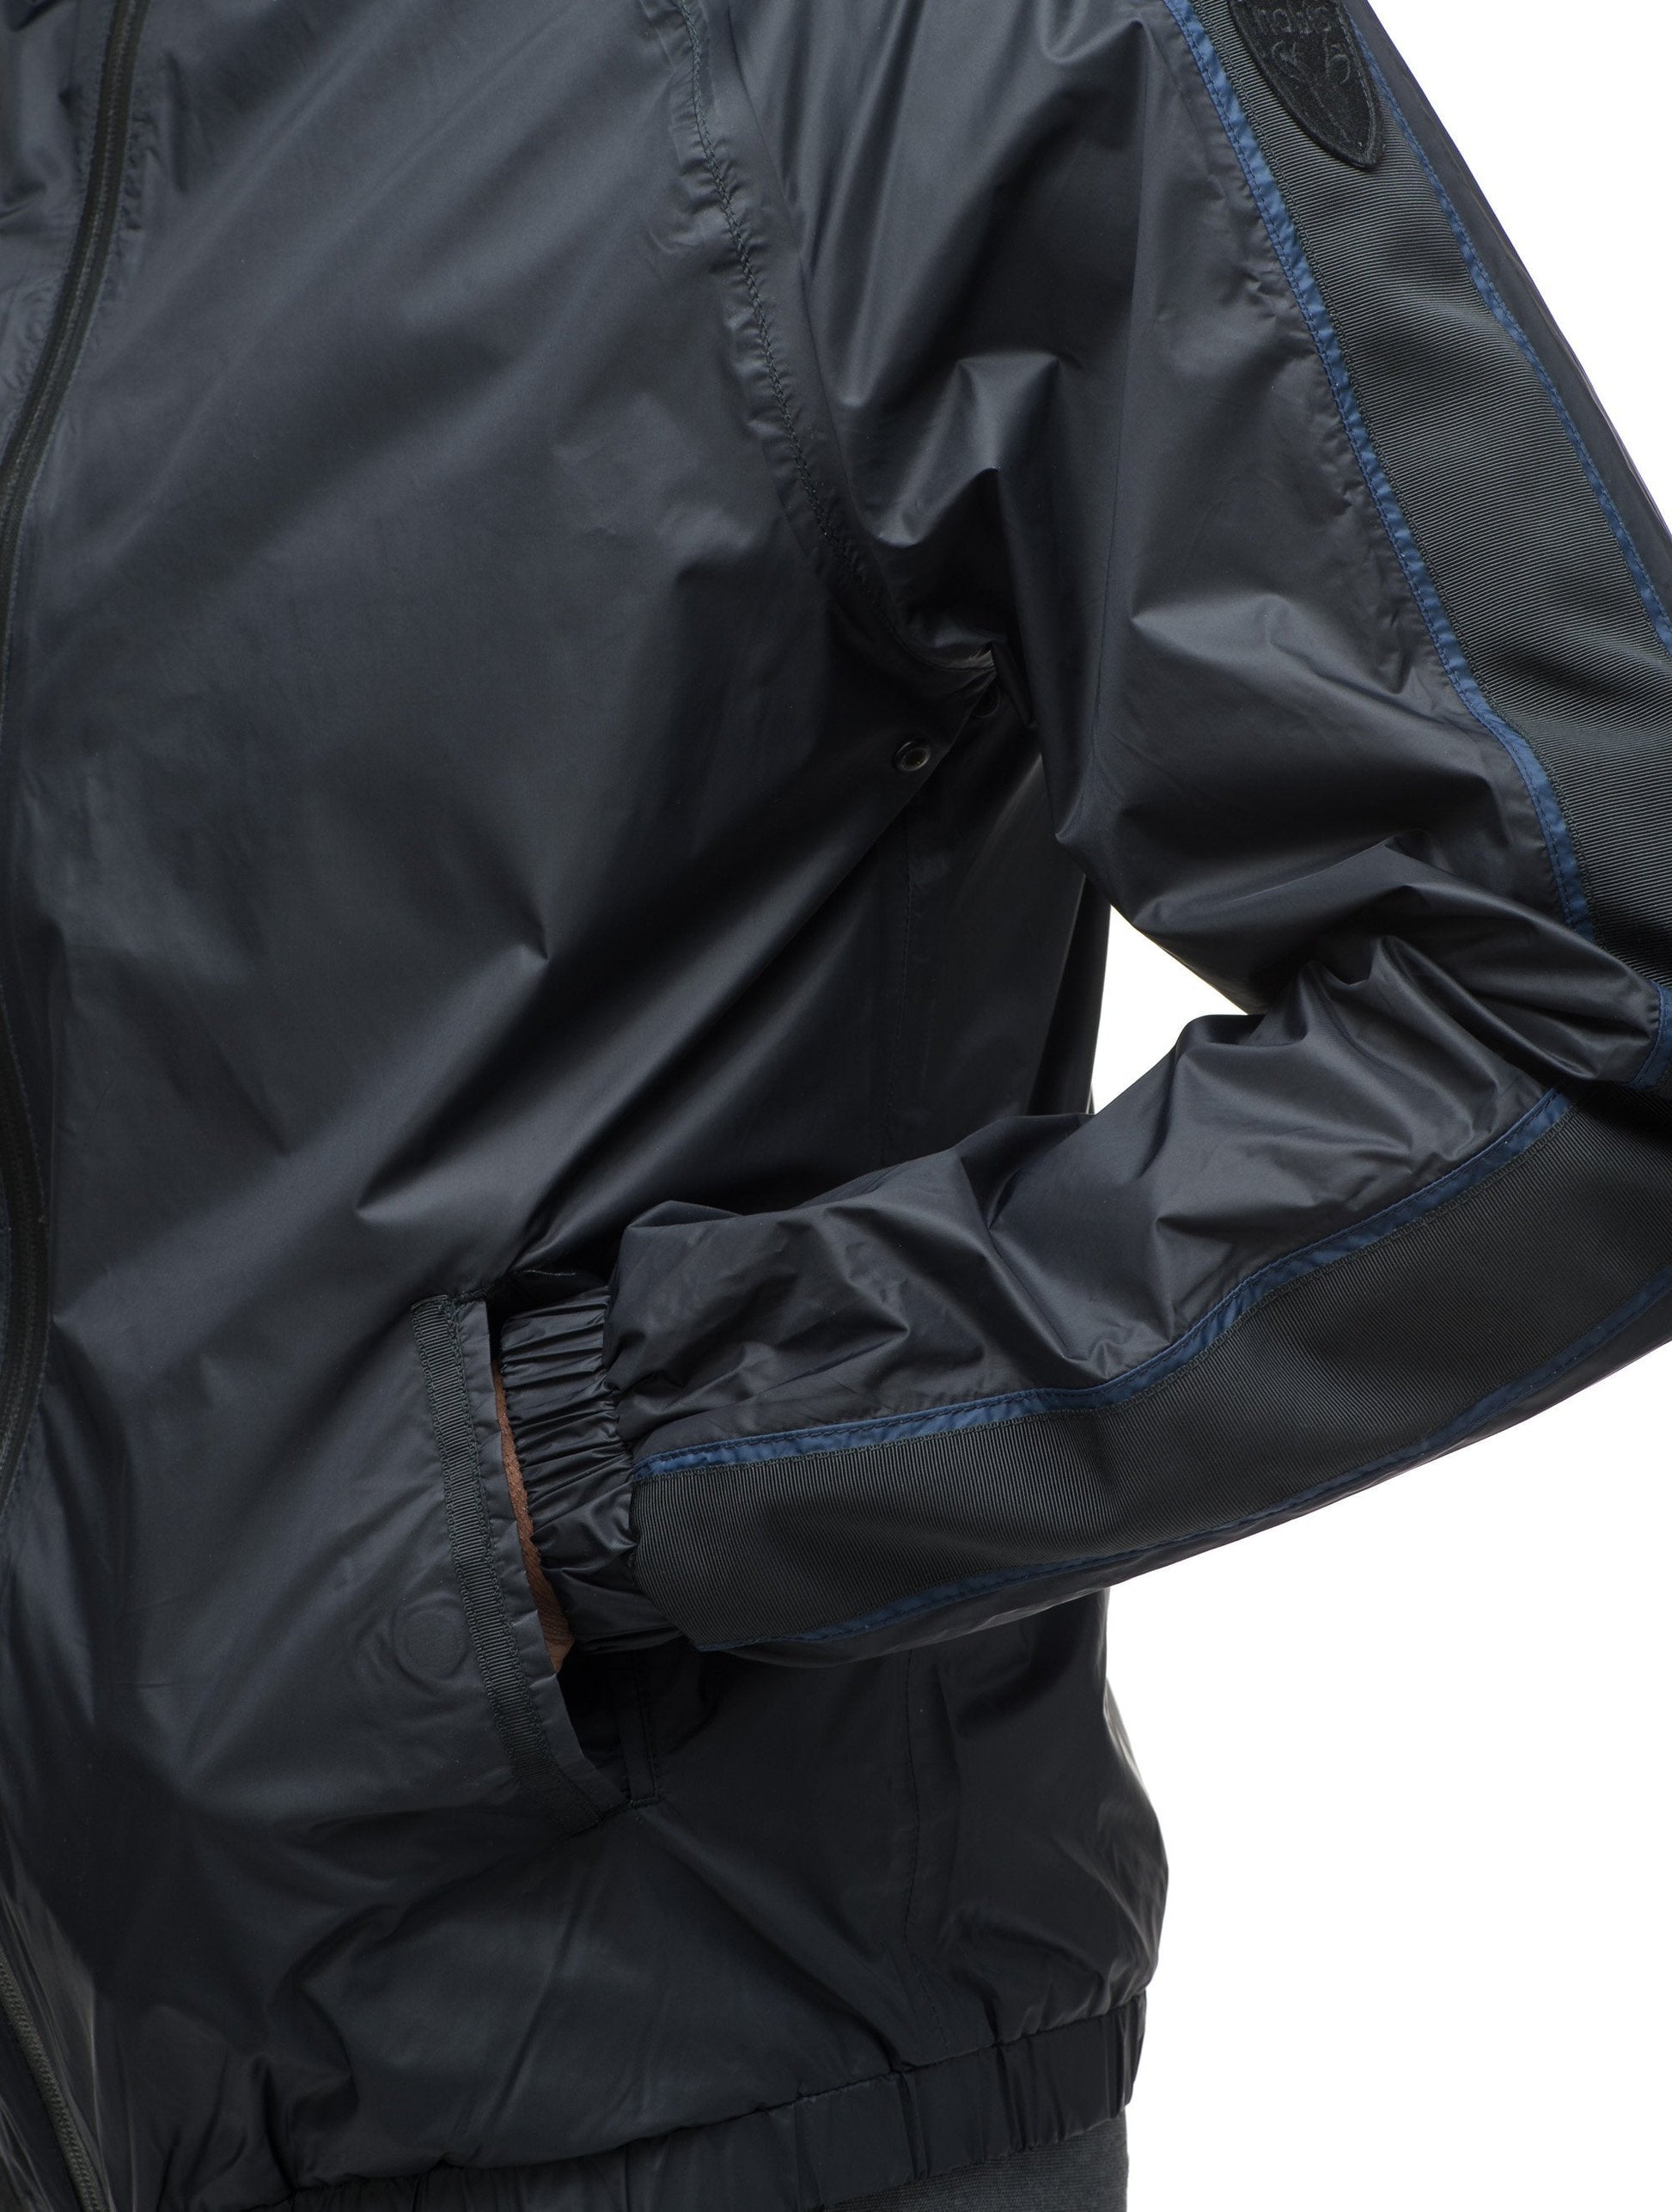 Men's waist length windbreaker with hood in Black